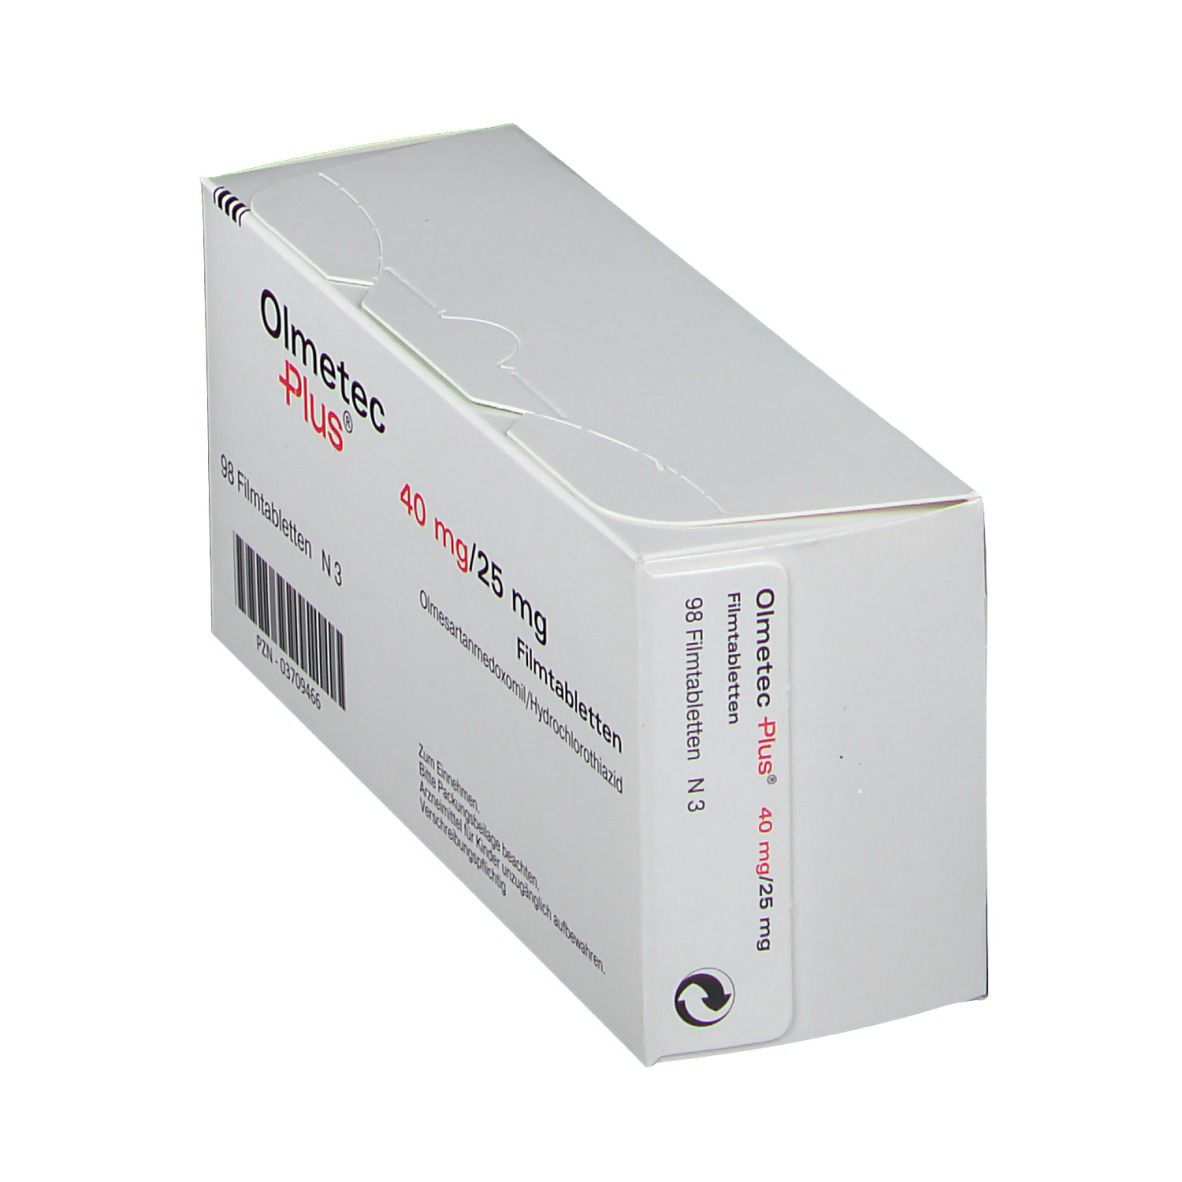 Olmetec Plus® 40 mg/25 mg